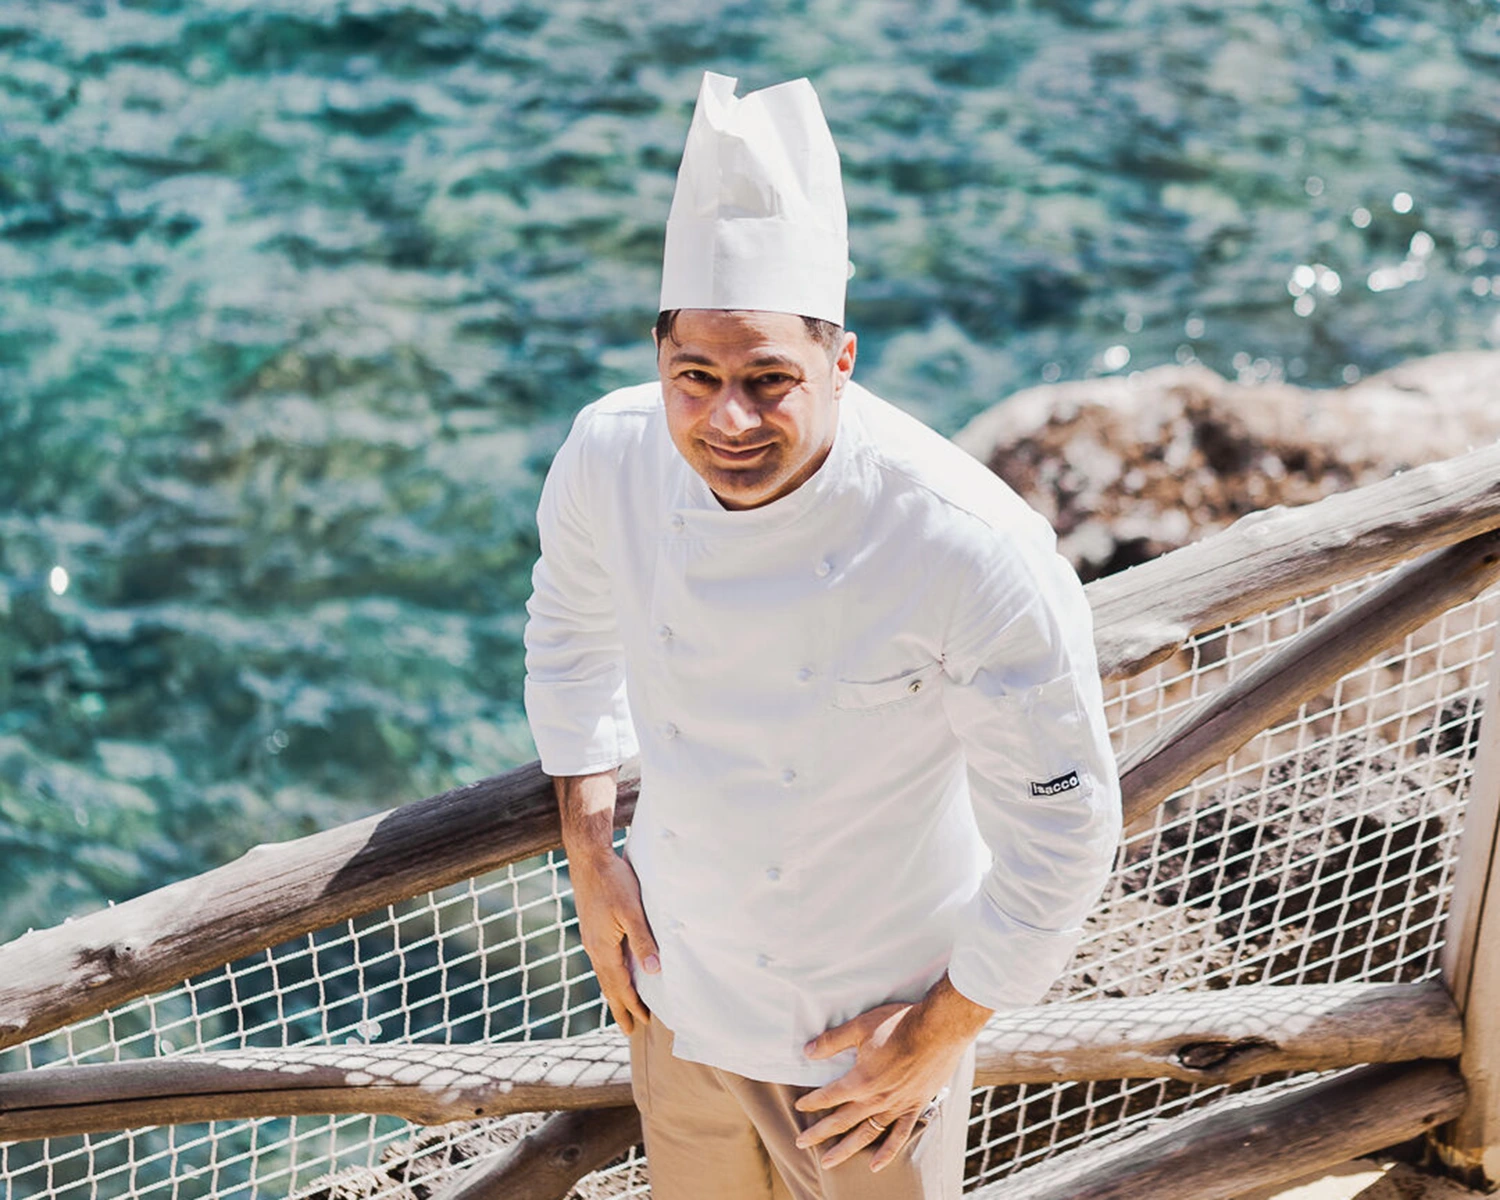 Mezzatorre Hotel Chef Giuseppe D’Abundo shares his Santo Stefano menu